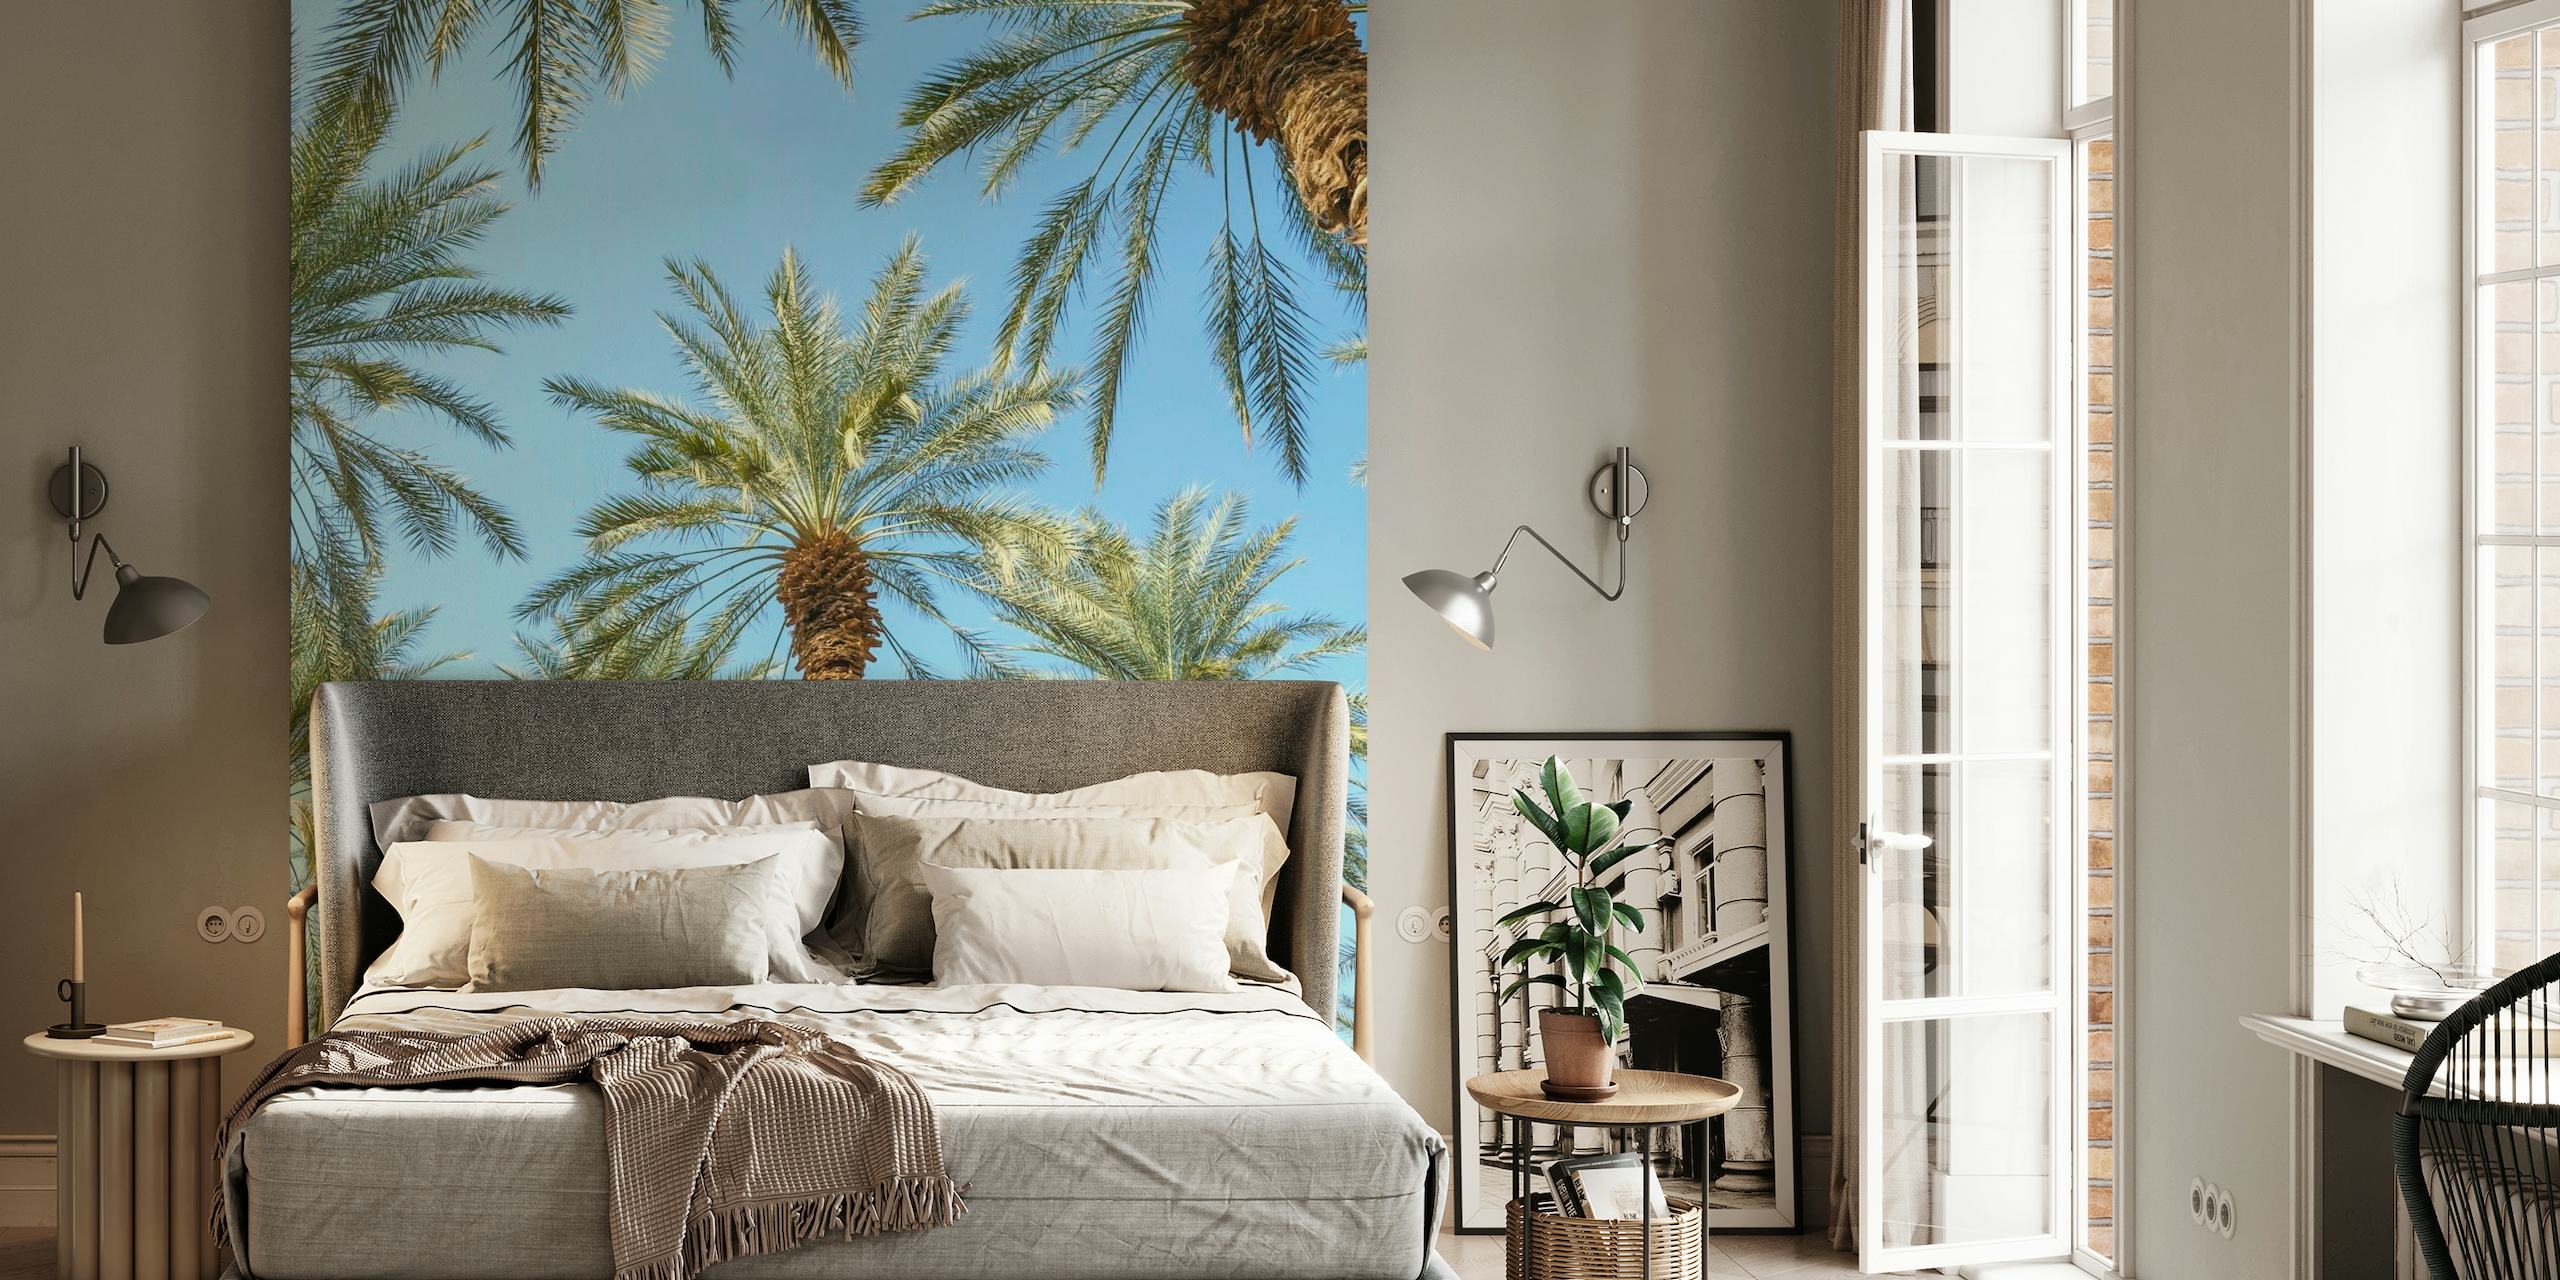 Muurschildering met tropische palmbomen voor een serene woonsfeer.